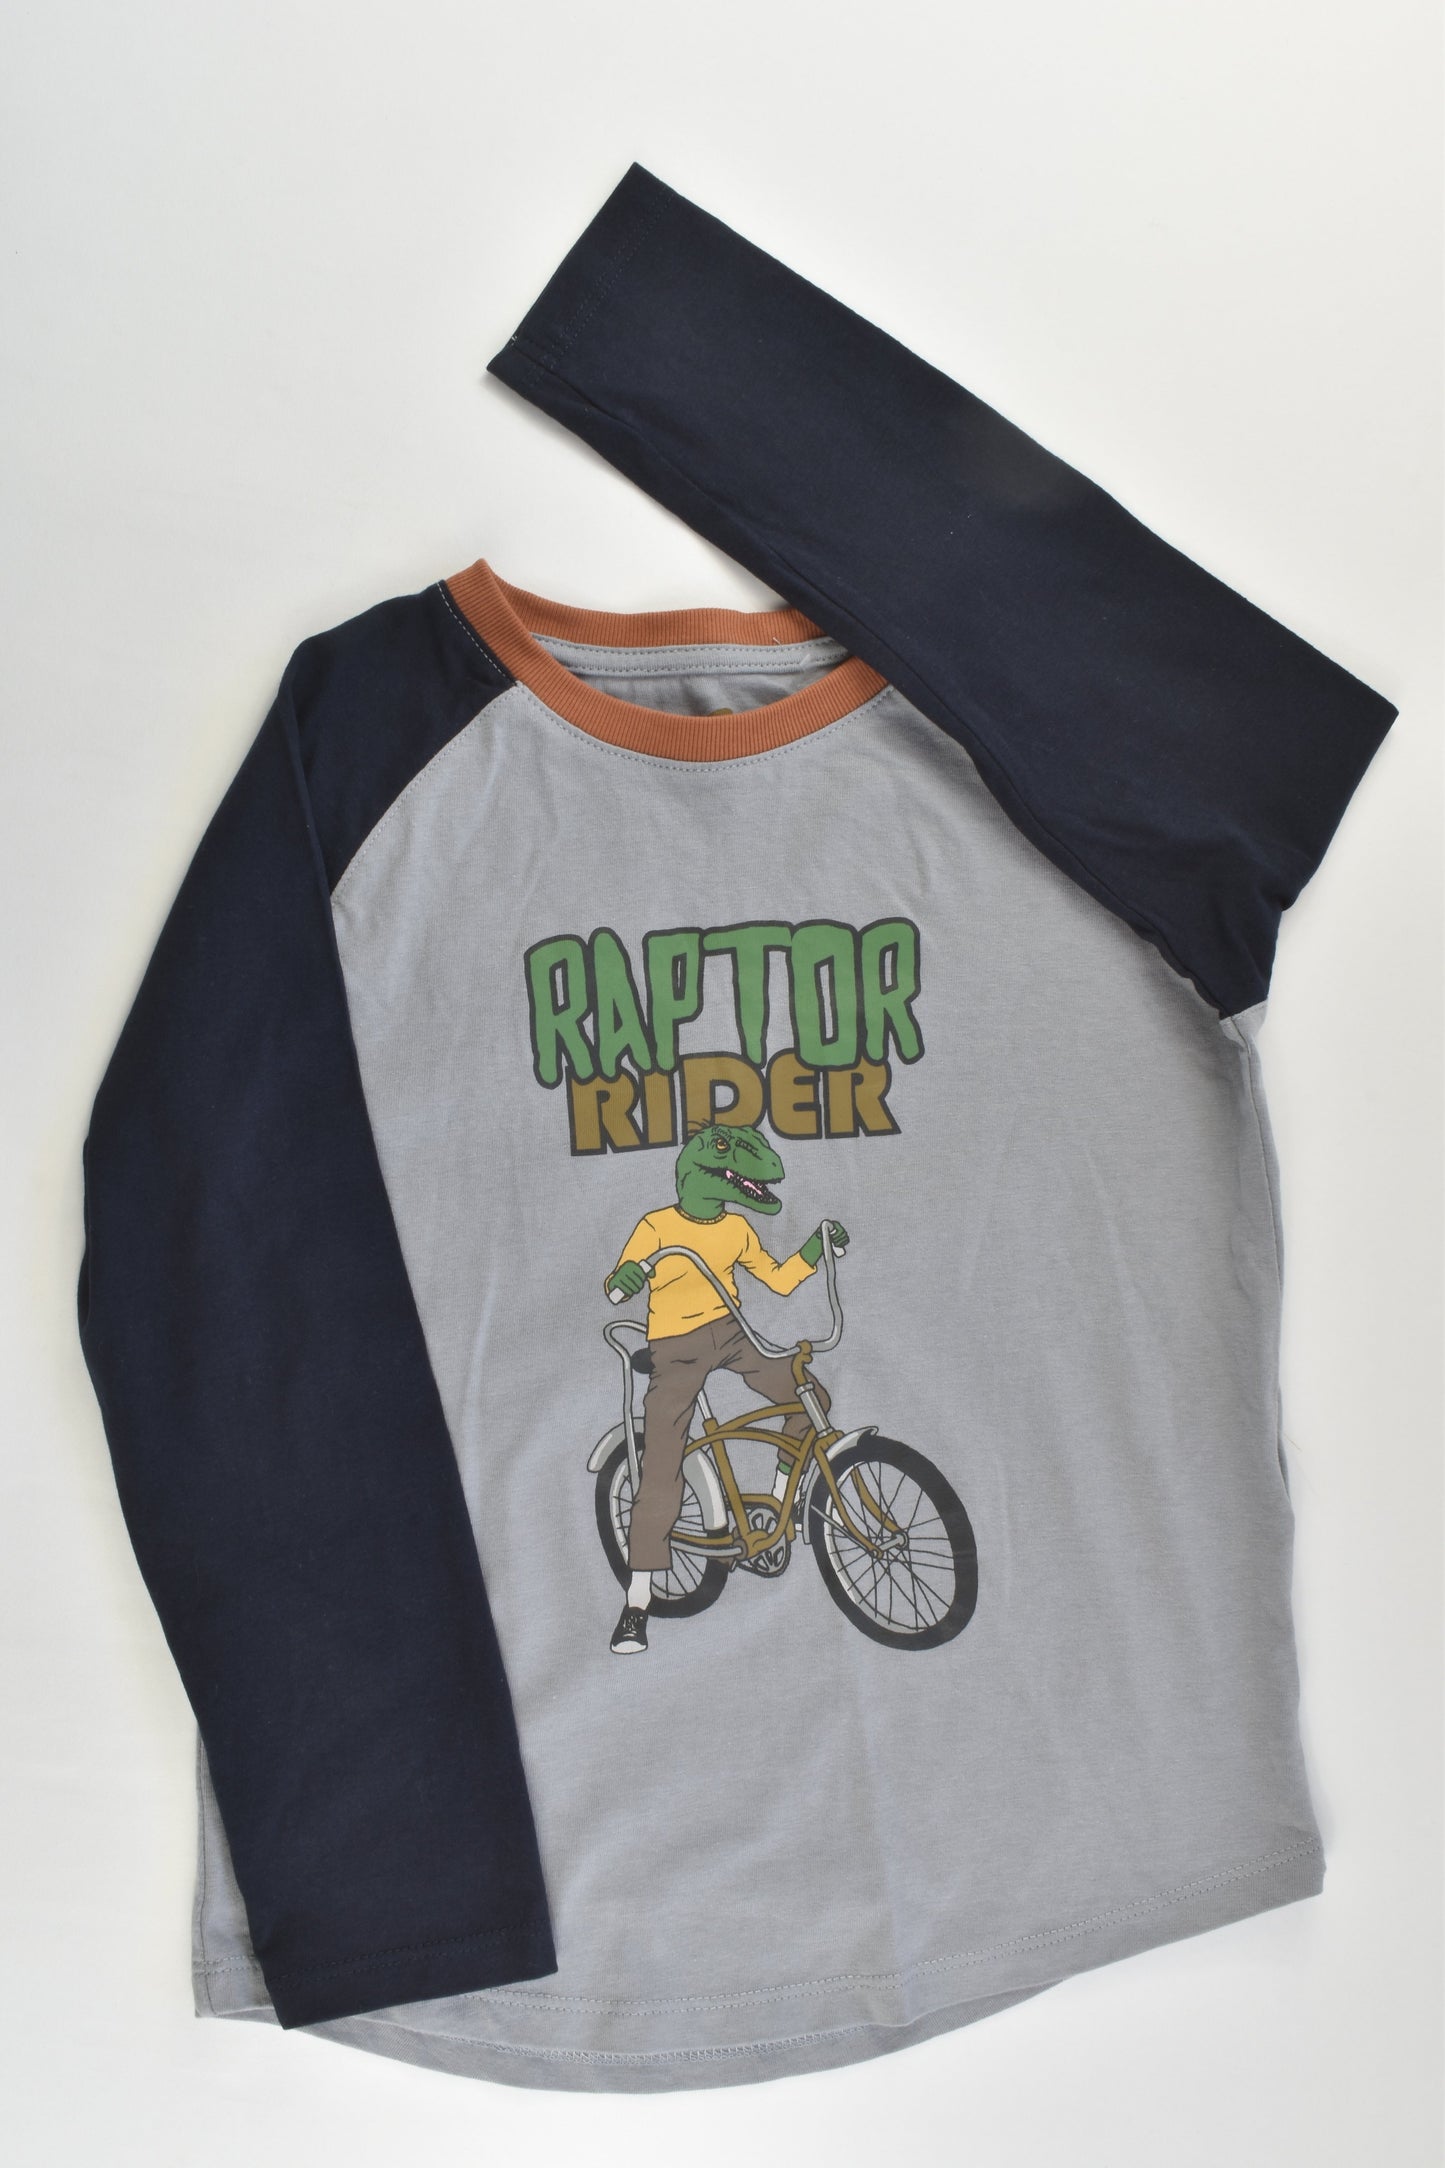 Cotton On Kids Size 6 'Raptor Rider' Top